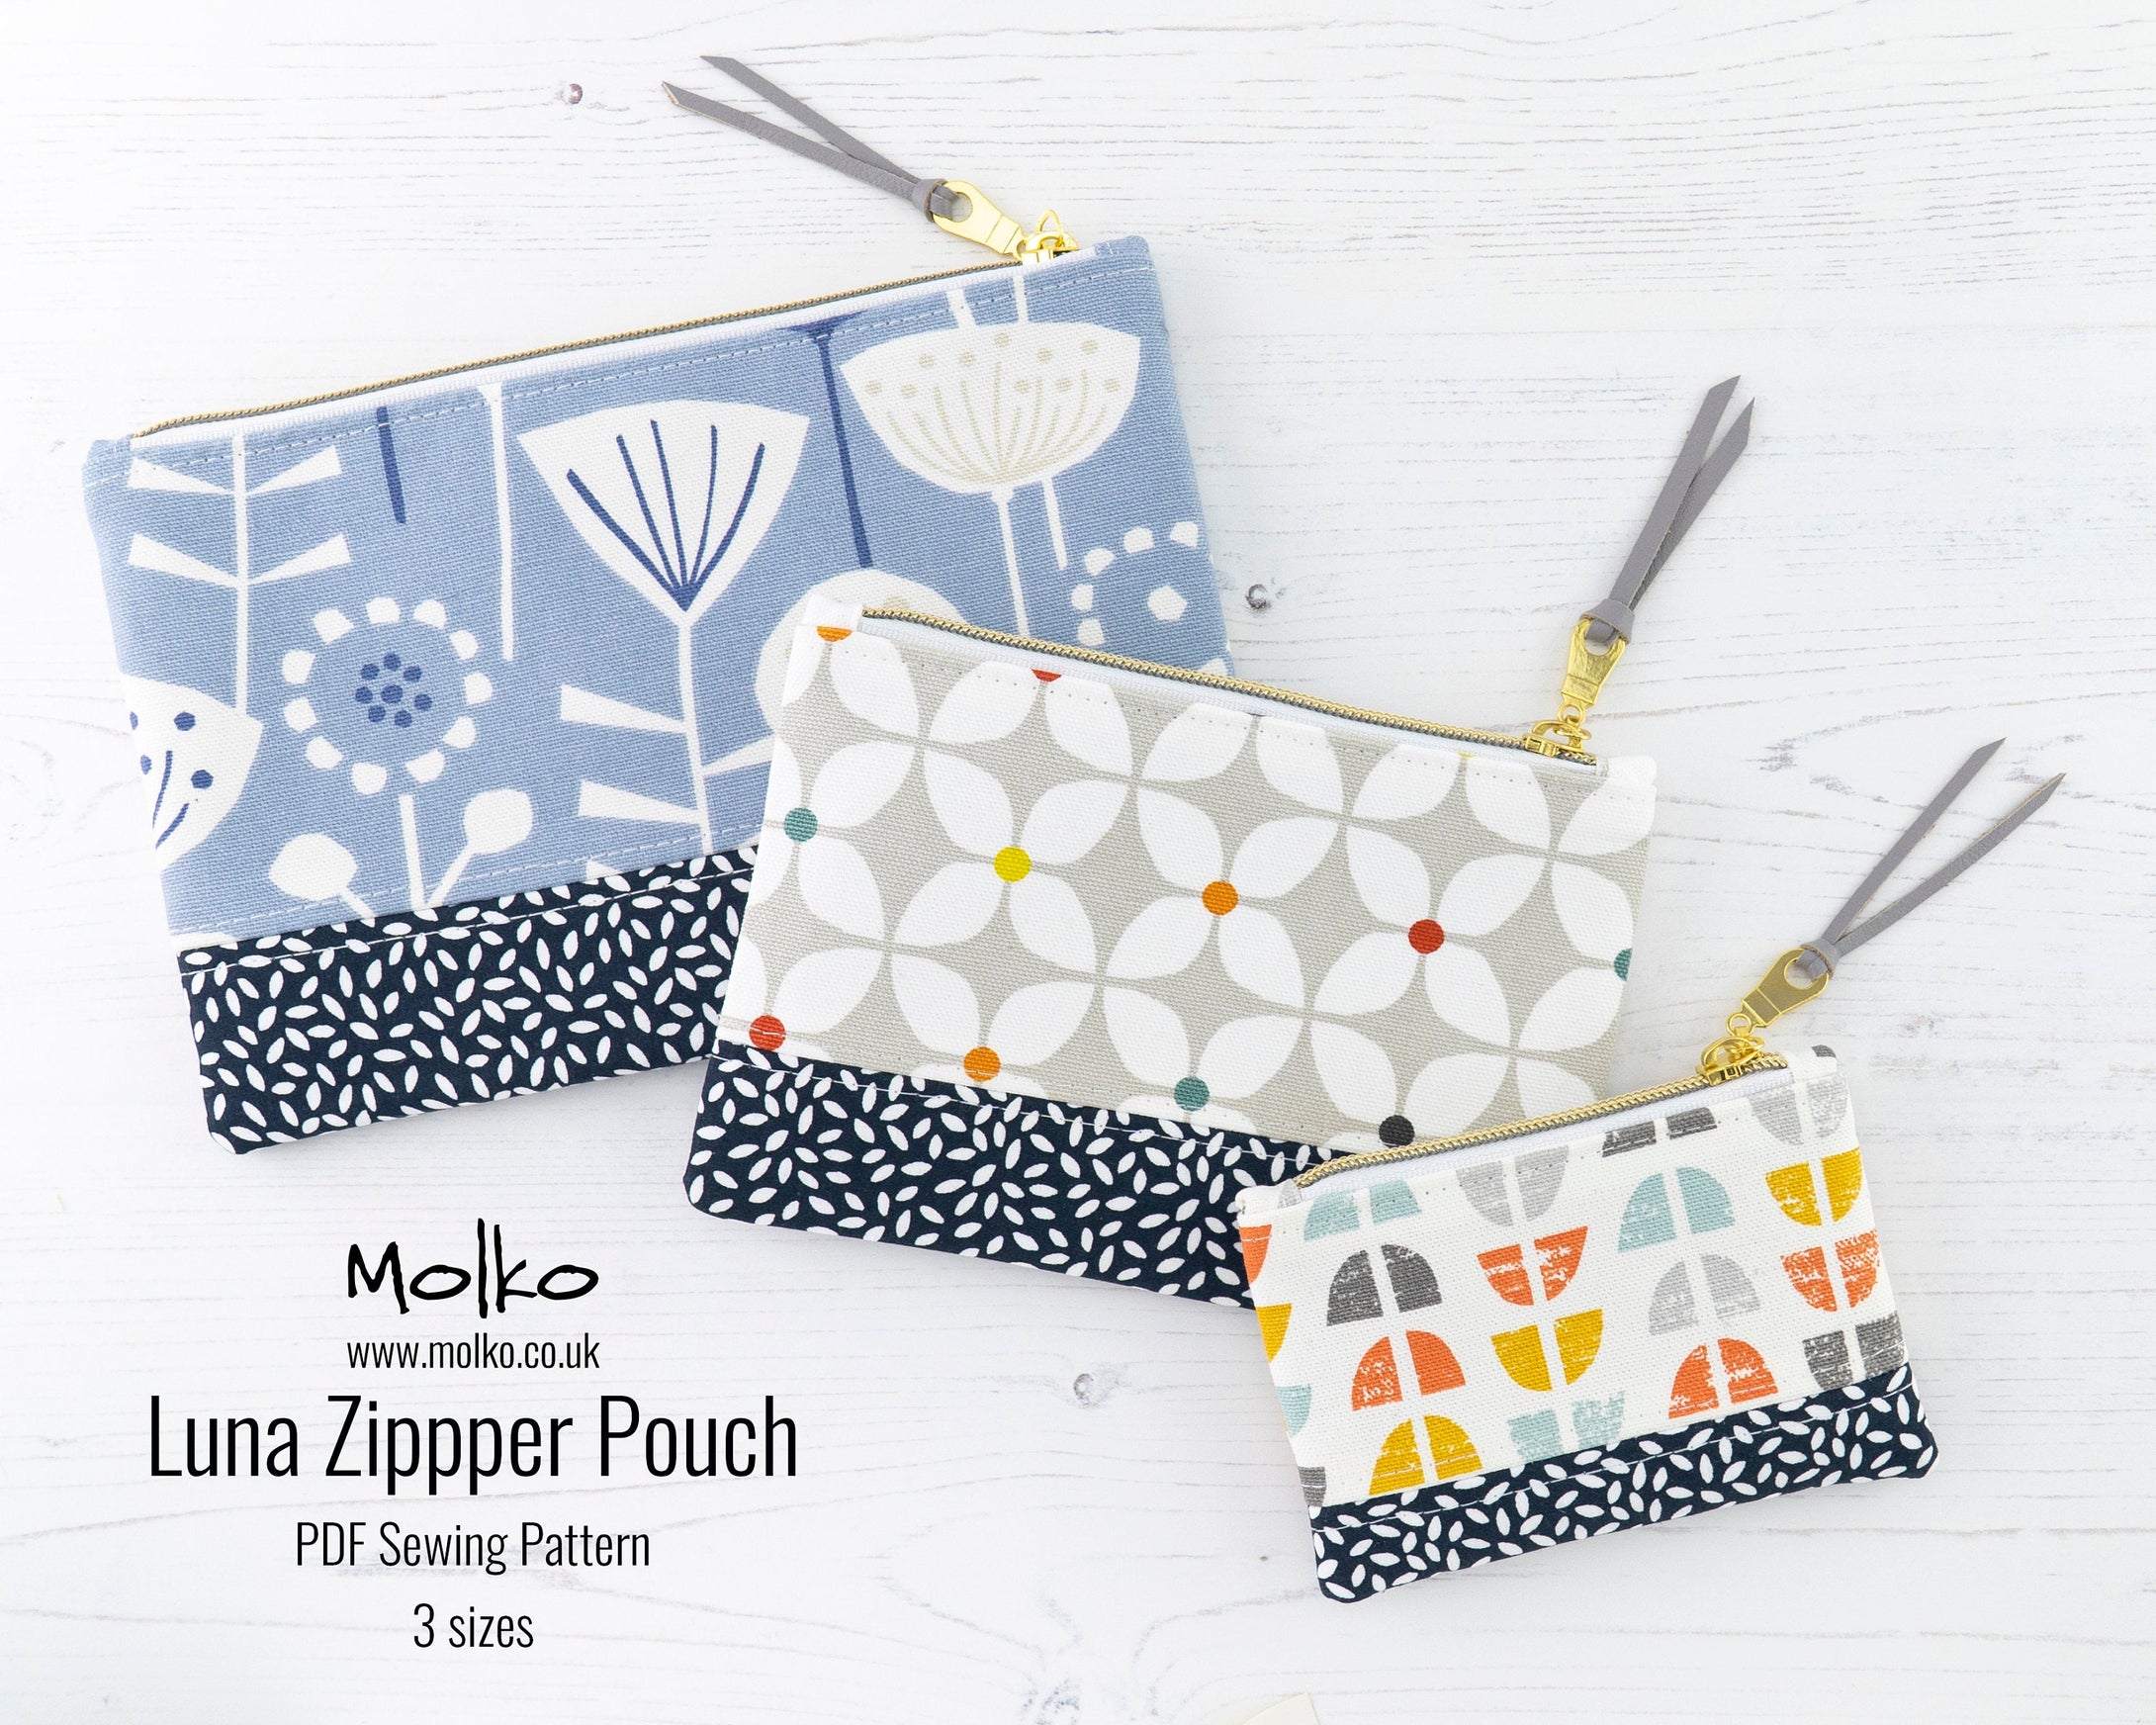 Luna zipper pouch purse PDF sewing tutorial sewing pattern